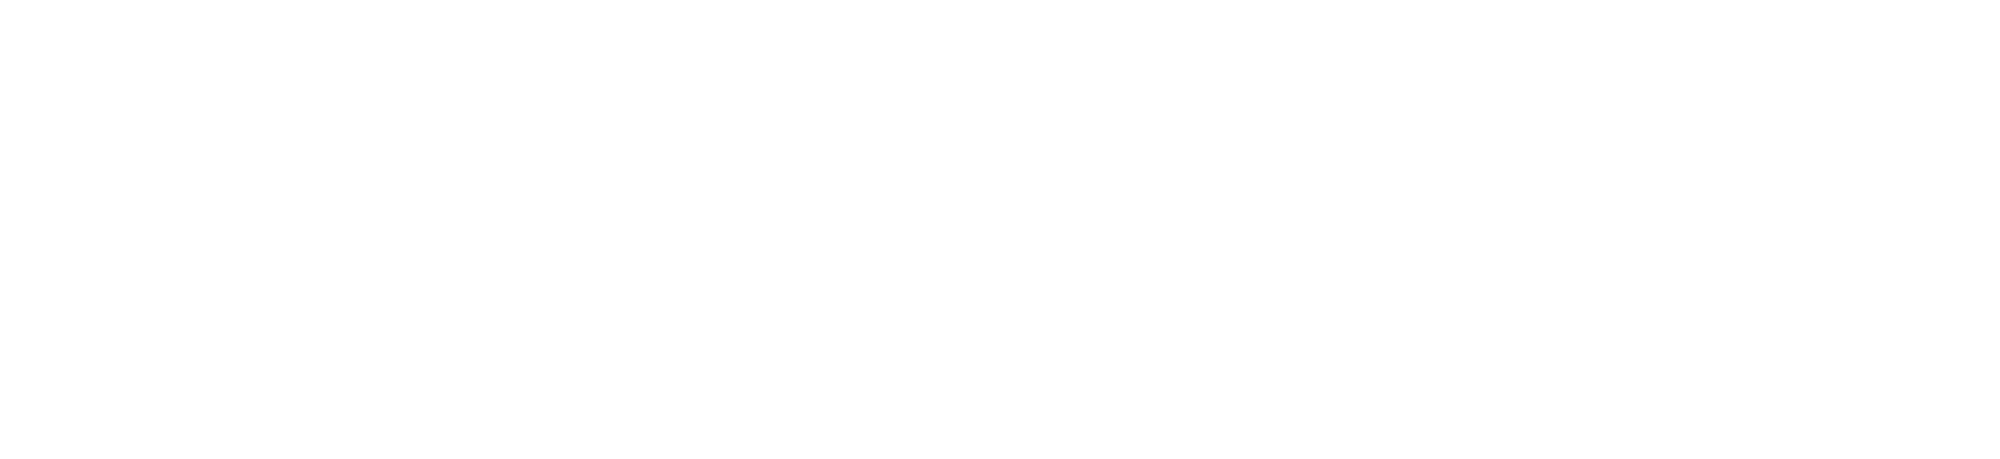 Global Biz Tech News